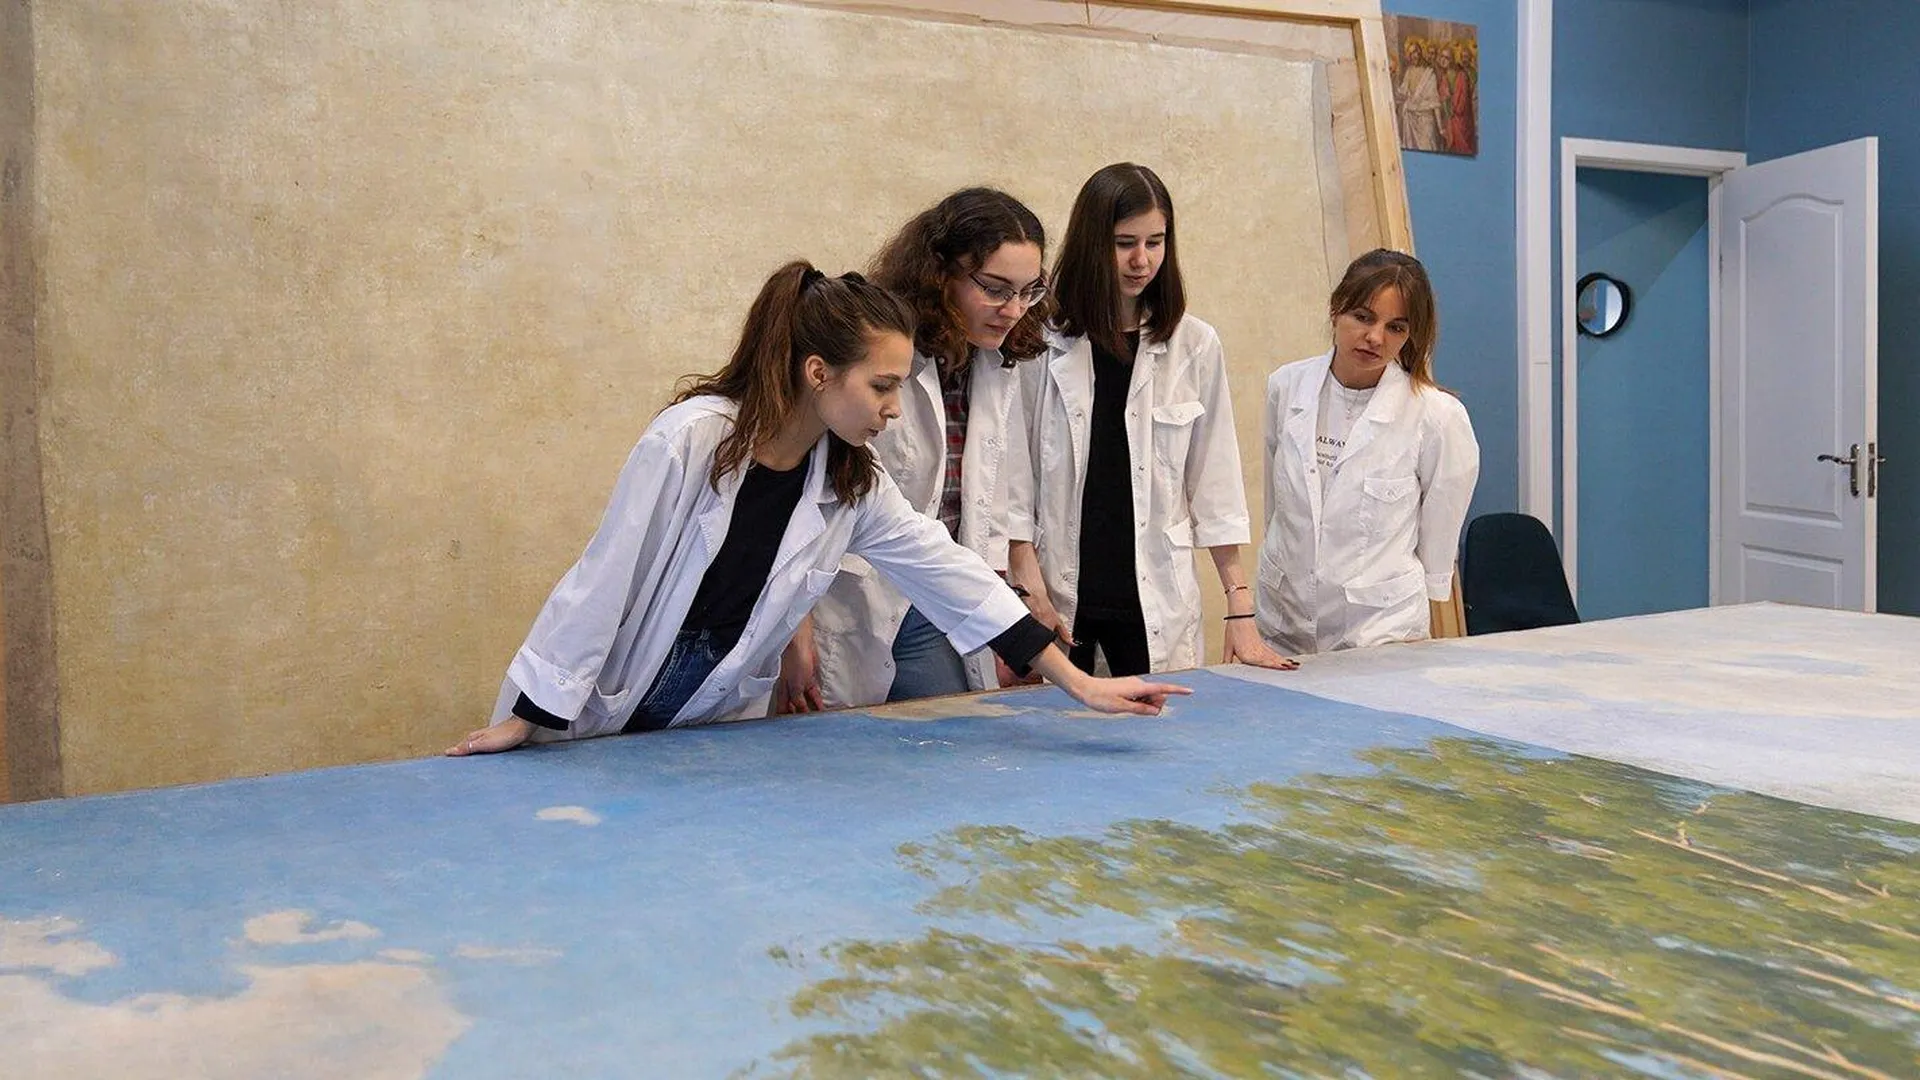 200 студентов участвовали в реставрации памятников в Москве по профильной программе